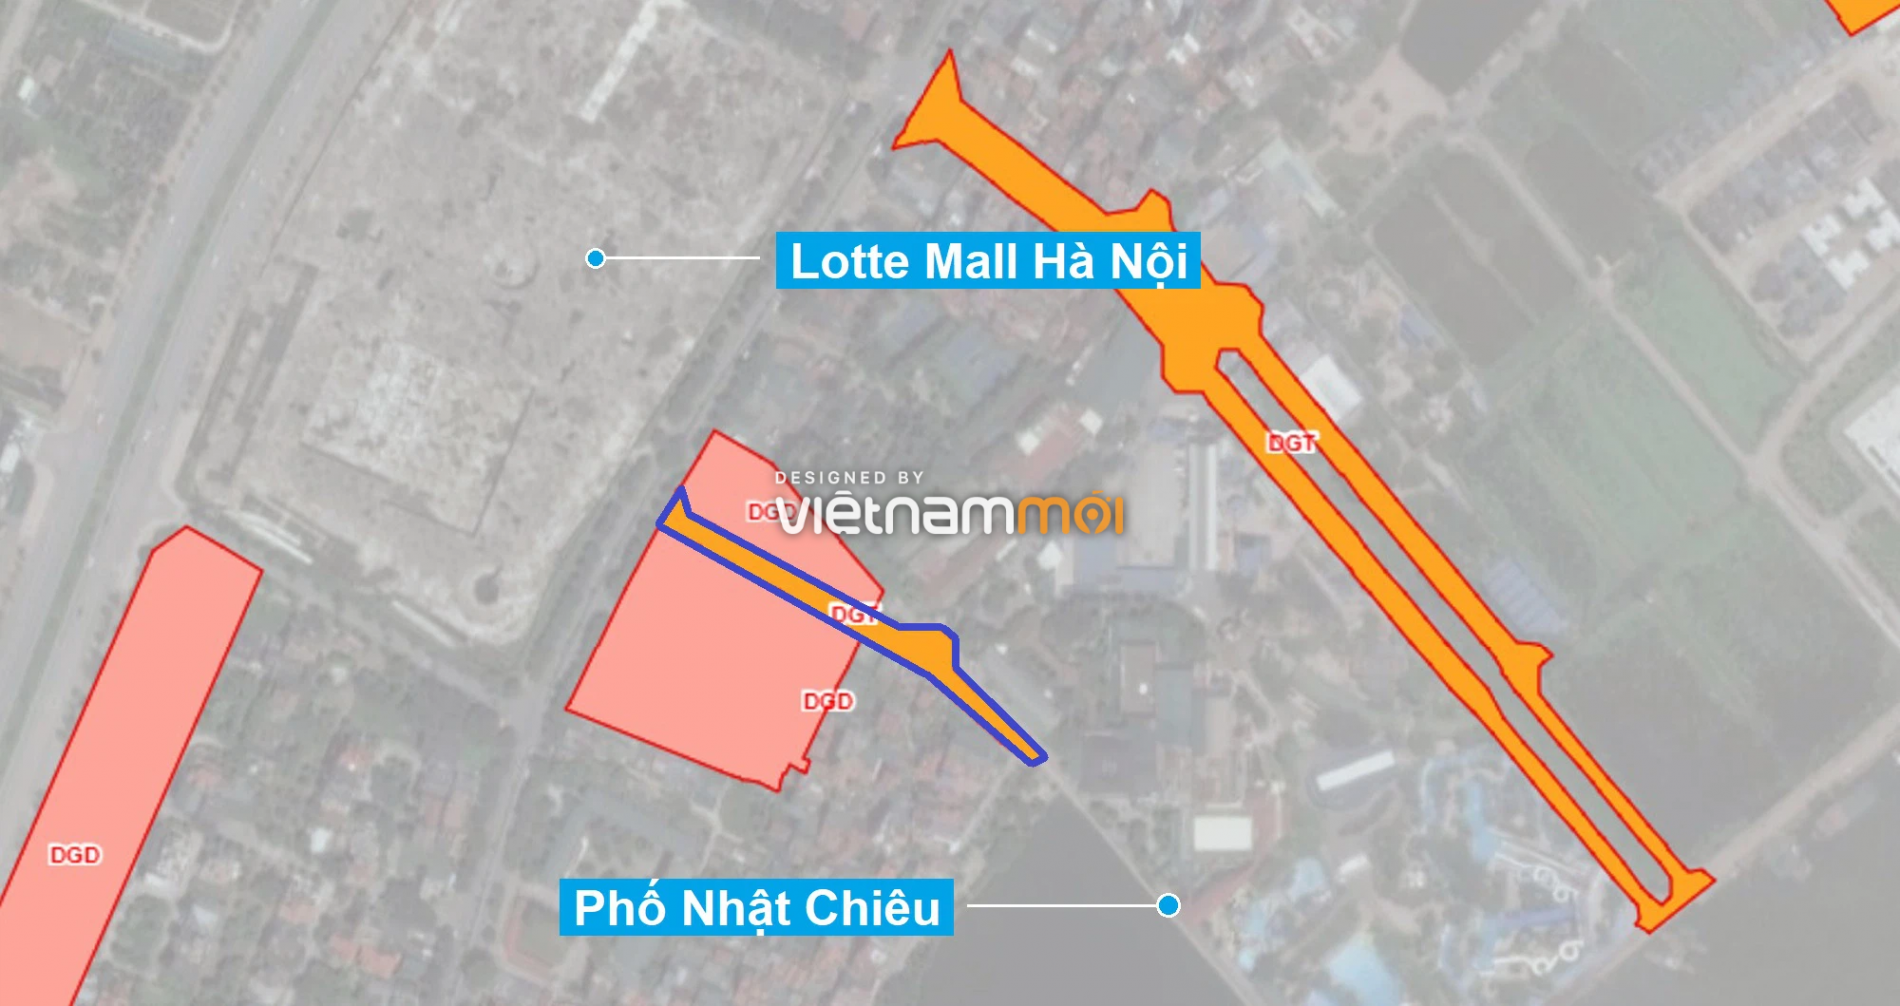 Những khu đất sắp thu hồi để mở đường ở quận Tây Hồ, Hà Nội (phần 3) - Ảnh 1.